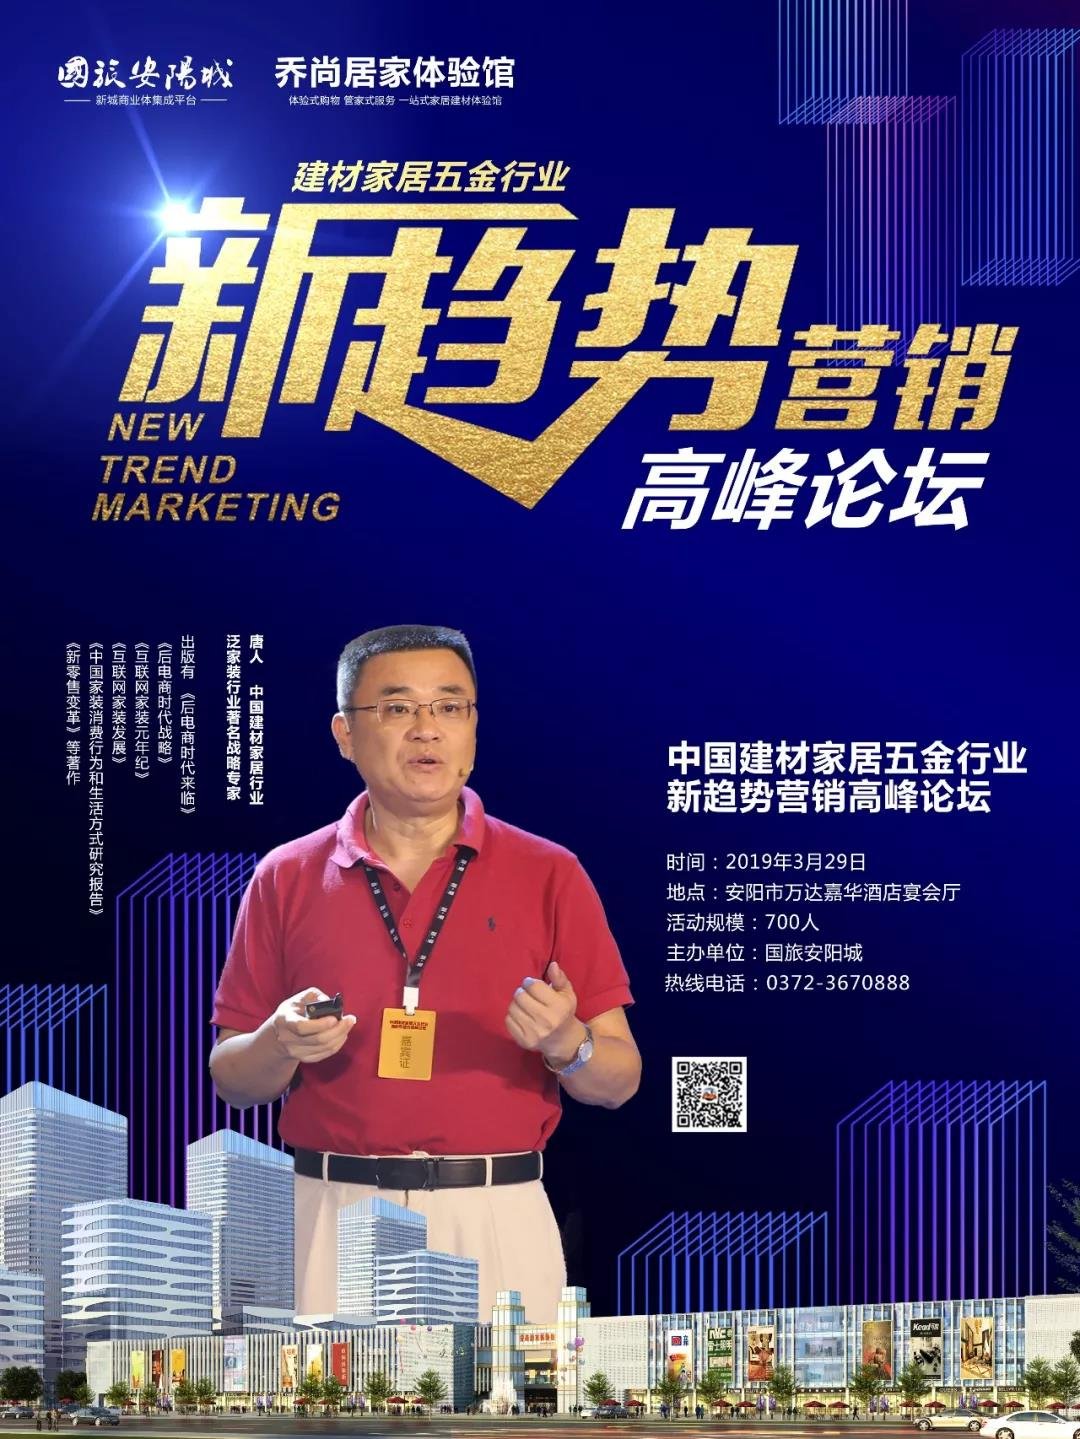 中国建材家居五金行业新趋势营销高峰论坛即将在我市举行